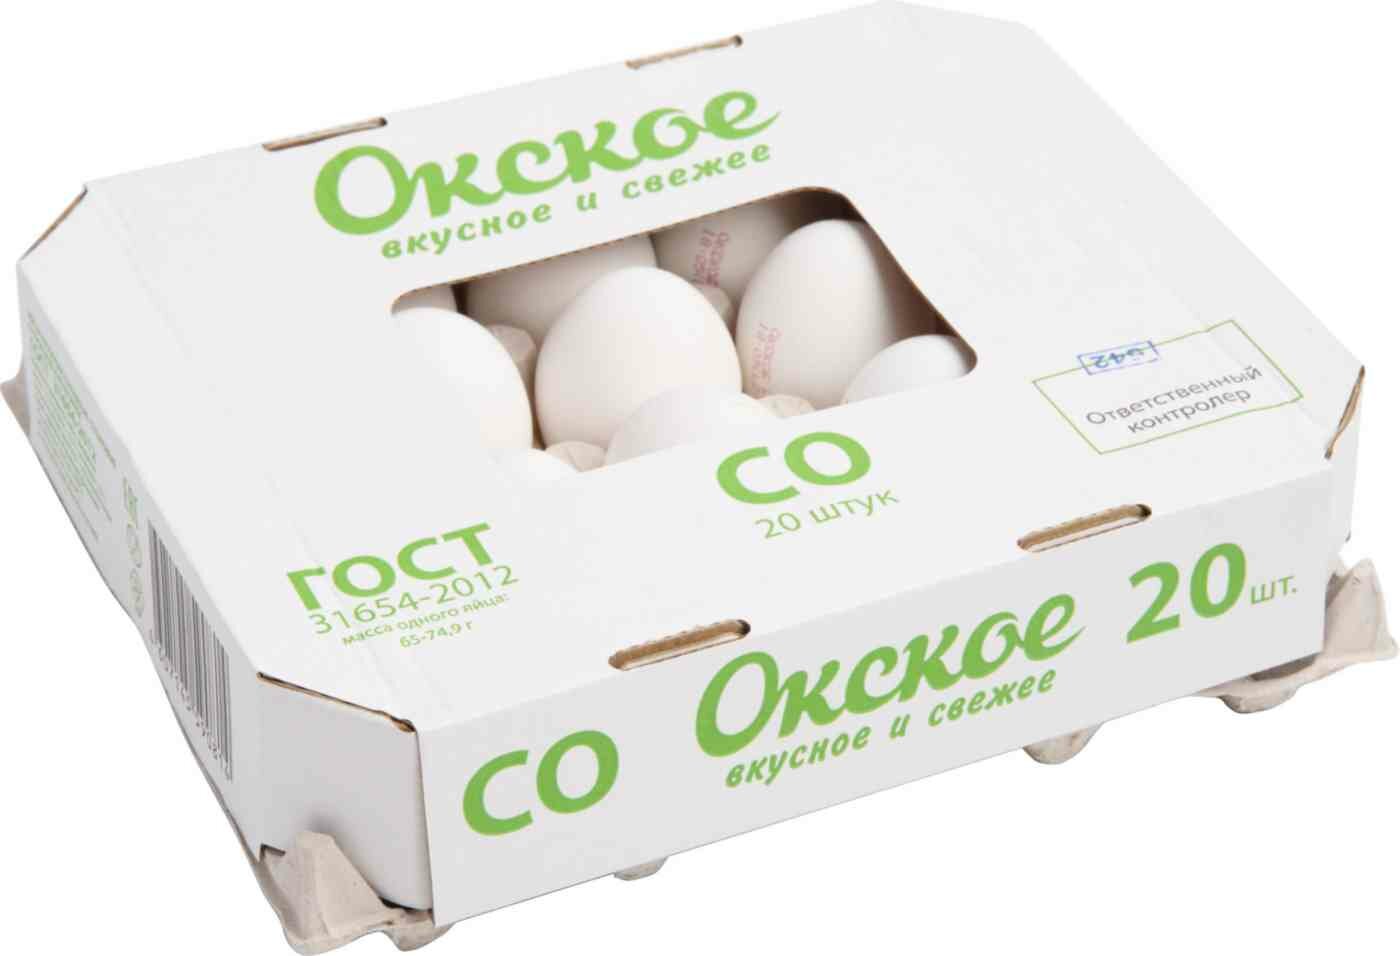 Яйцо куриное Окское категория С0, 20 шт.